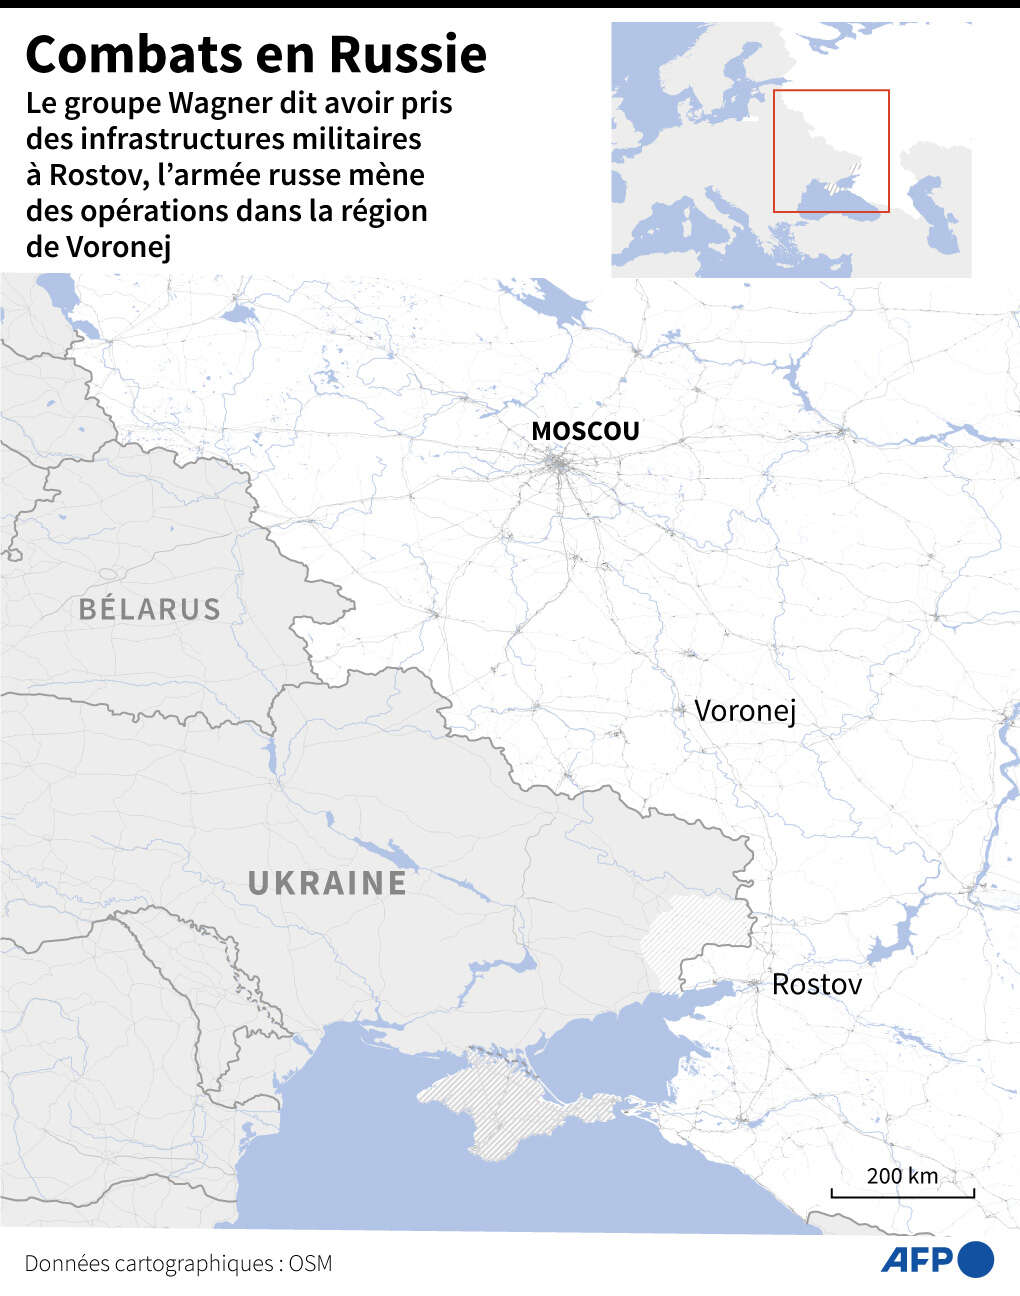 Carte de l’ouest de la Russie, avec Rostov, Voronej et Moscou.